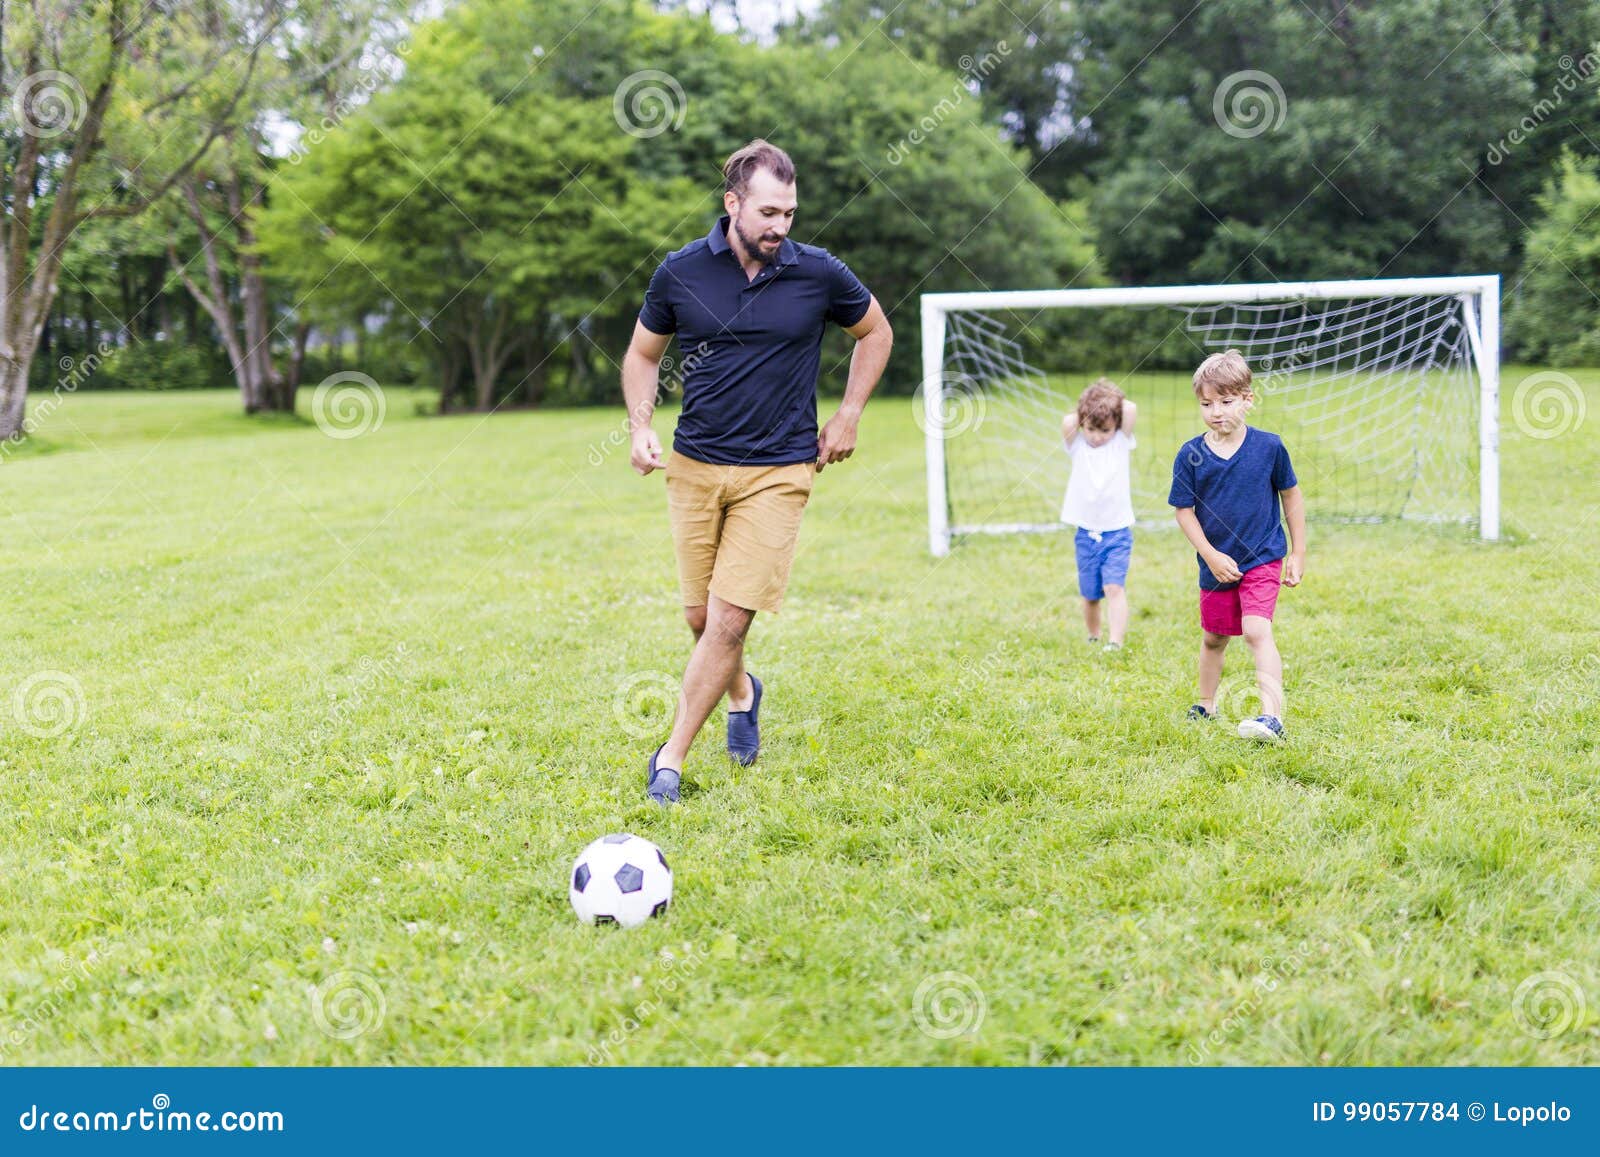 Папа играет в футбол. Папа и сын футбол. Отец и сын играют в футбол. Фотосессия на футбольном поле с сыном. Папа с сыном играют в футбол.